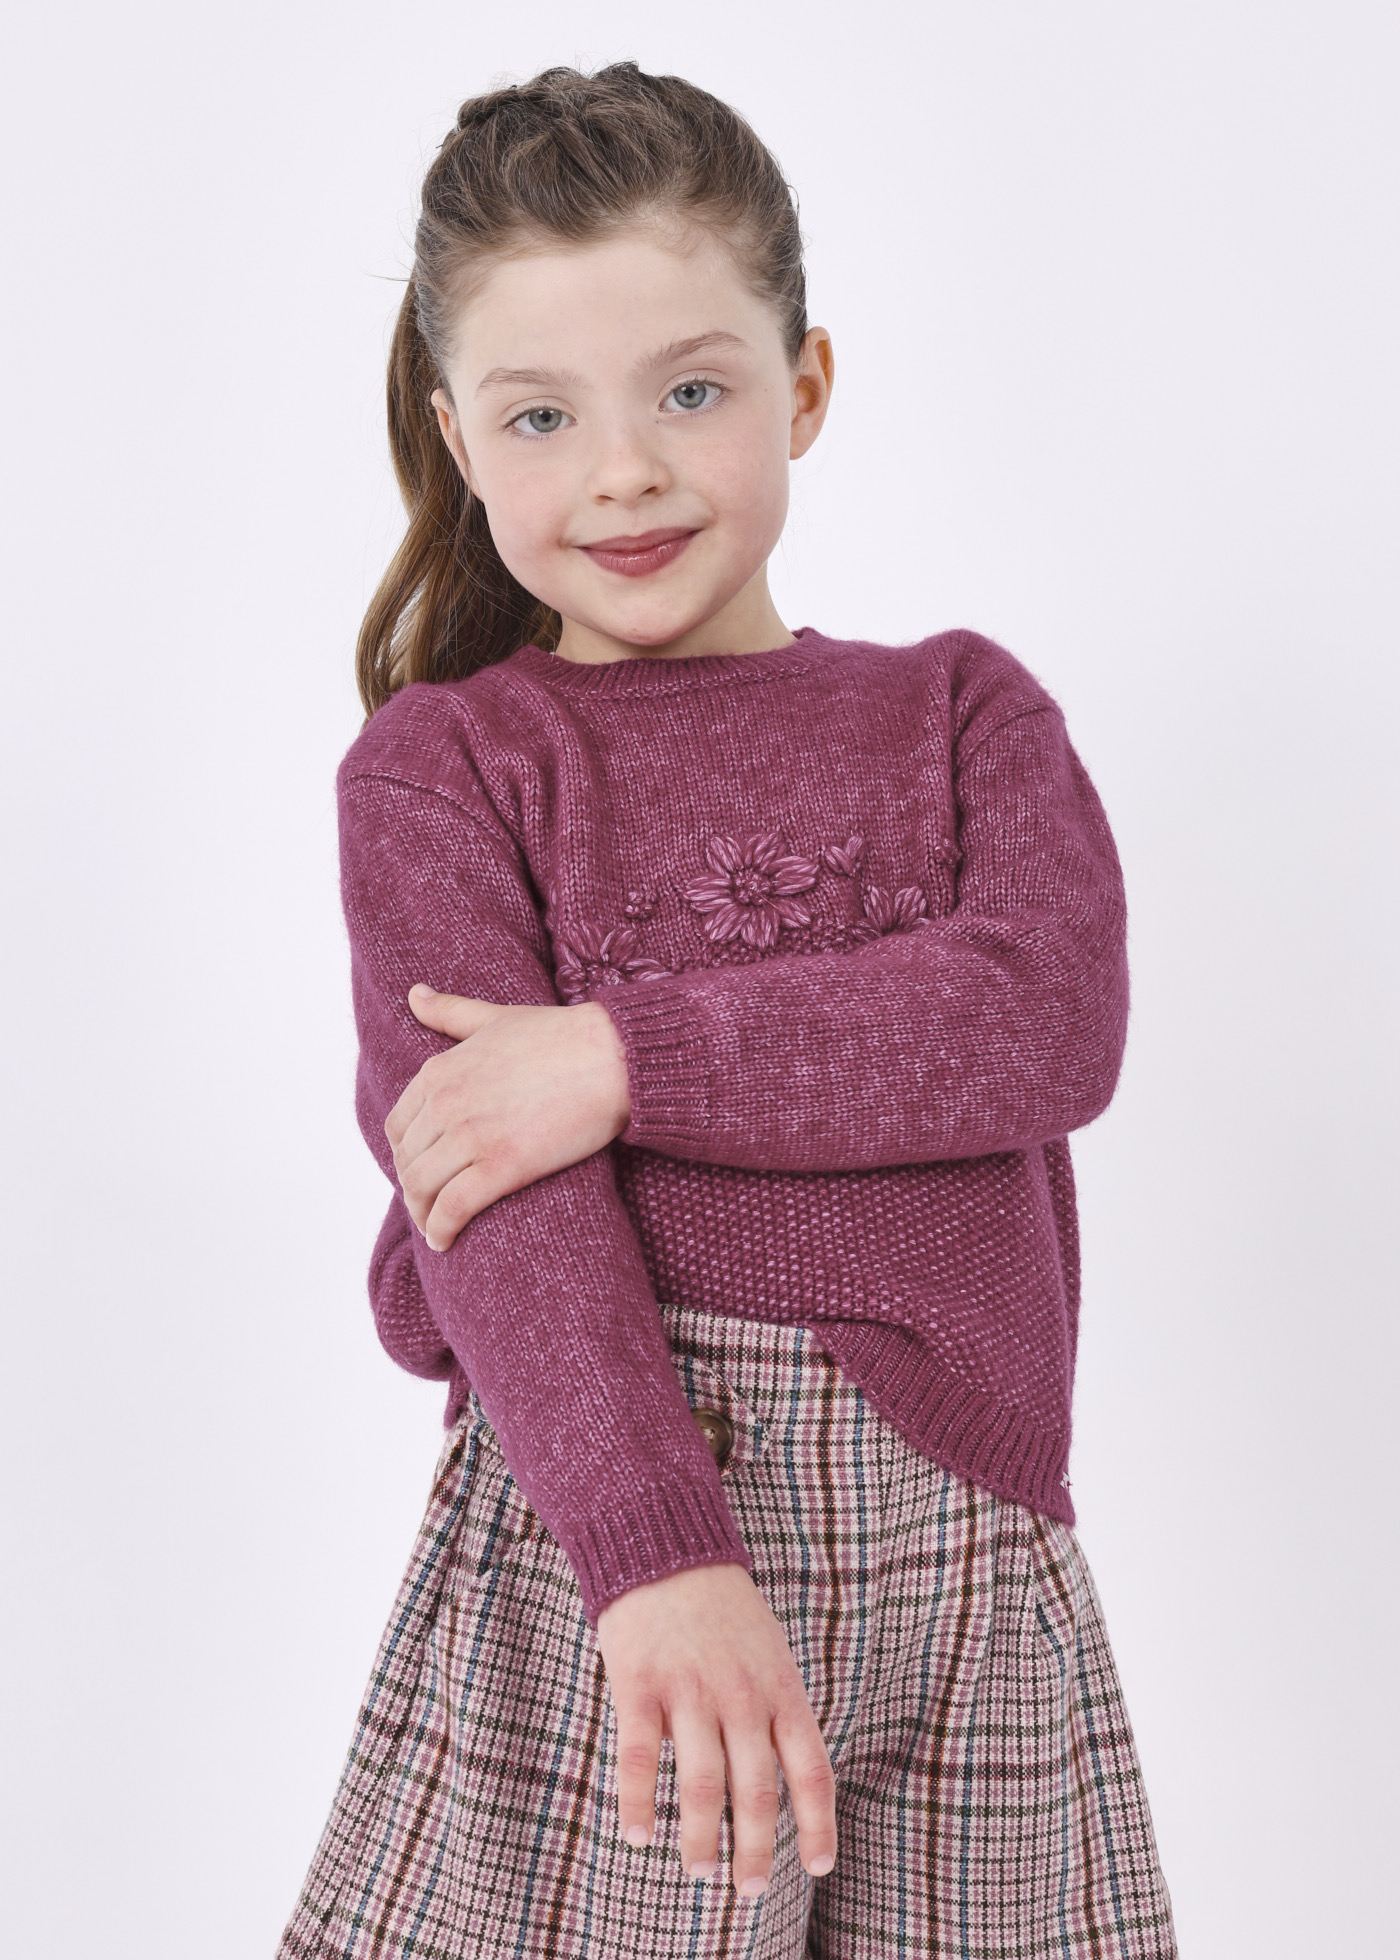 Chaleco tricot - Infantil, Niña